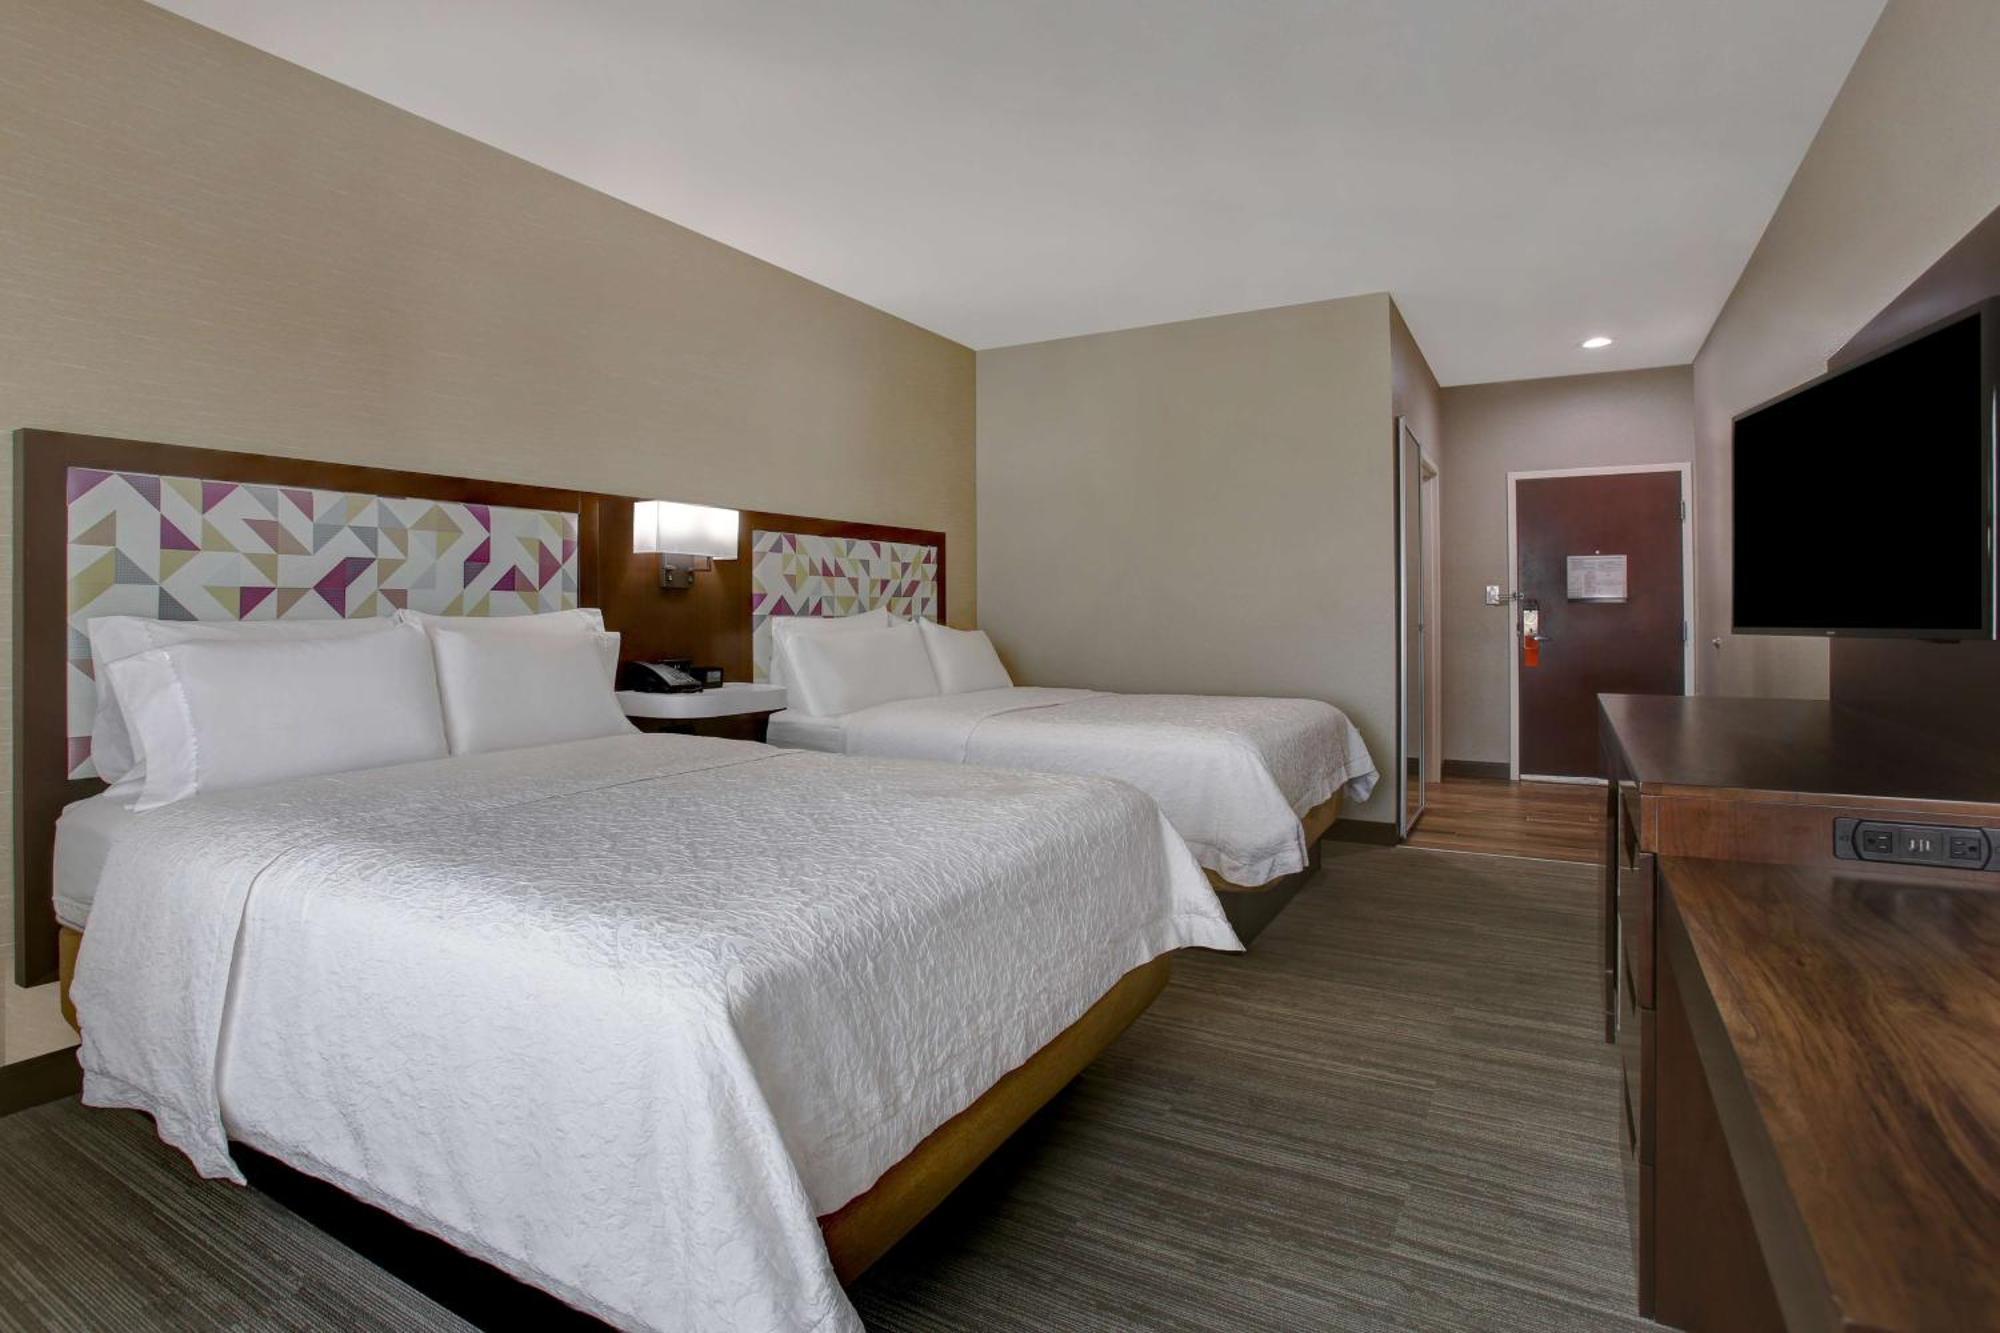 Hampton Inn & Suites Dallas-Desoto Εξωτερικό φωτογραφία